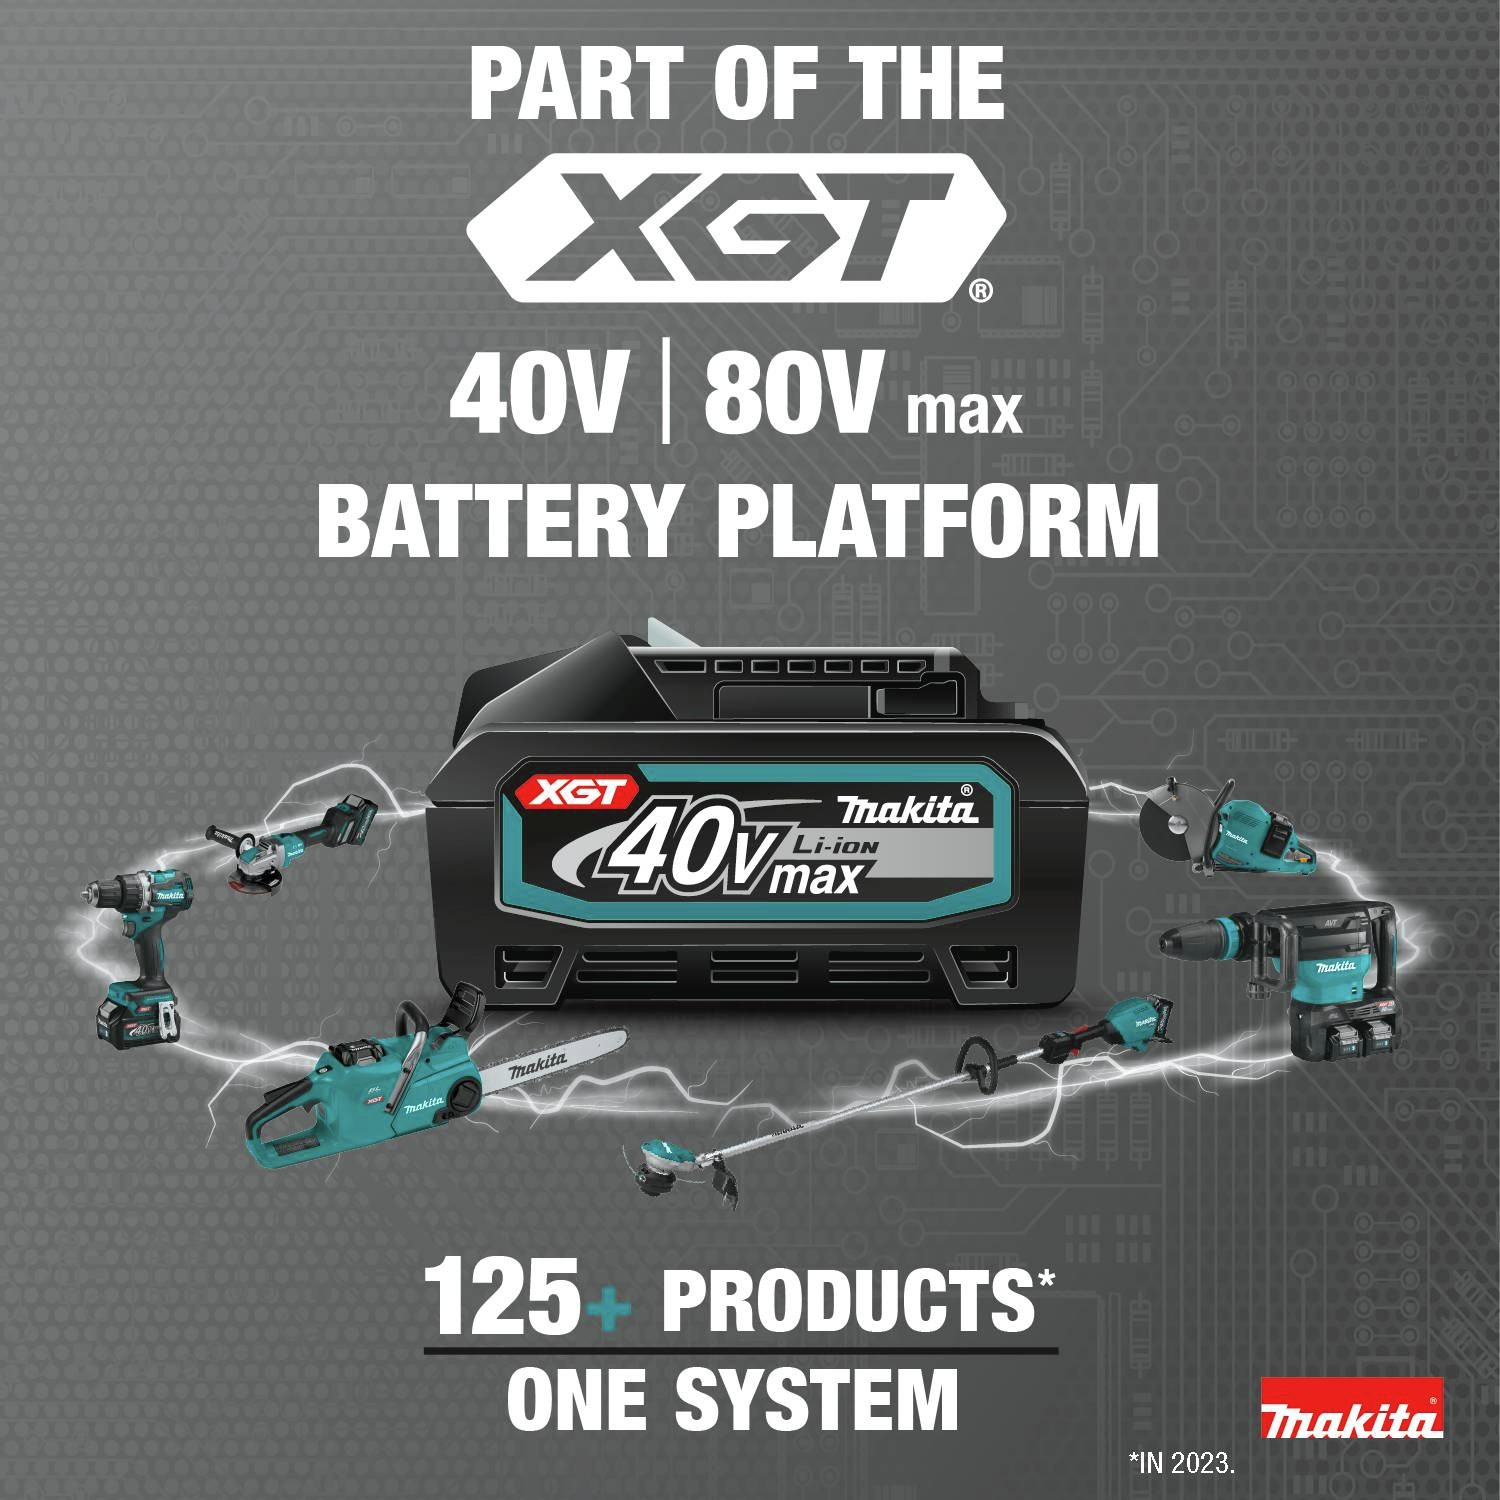 Part of the XGT 40V/80V MAX Battery Platform